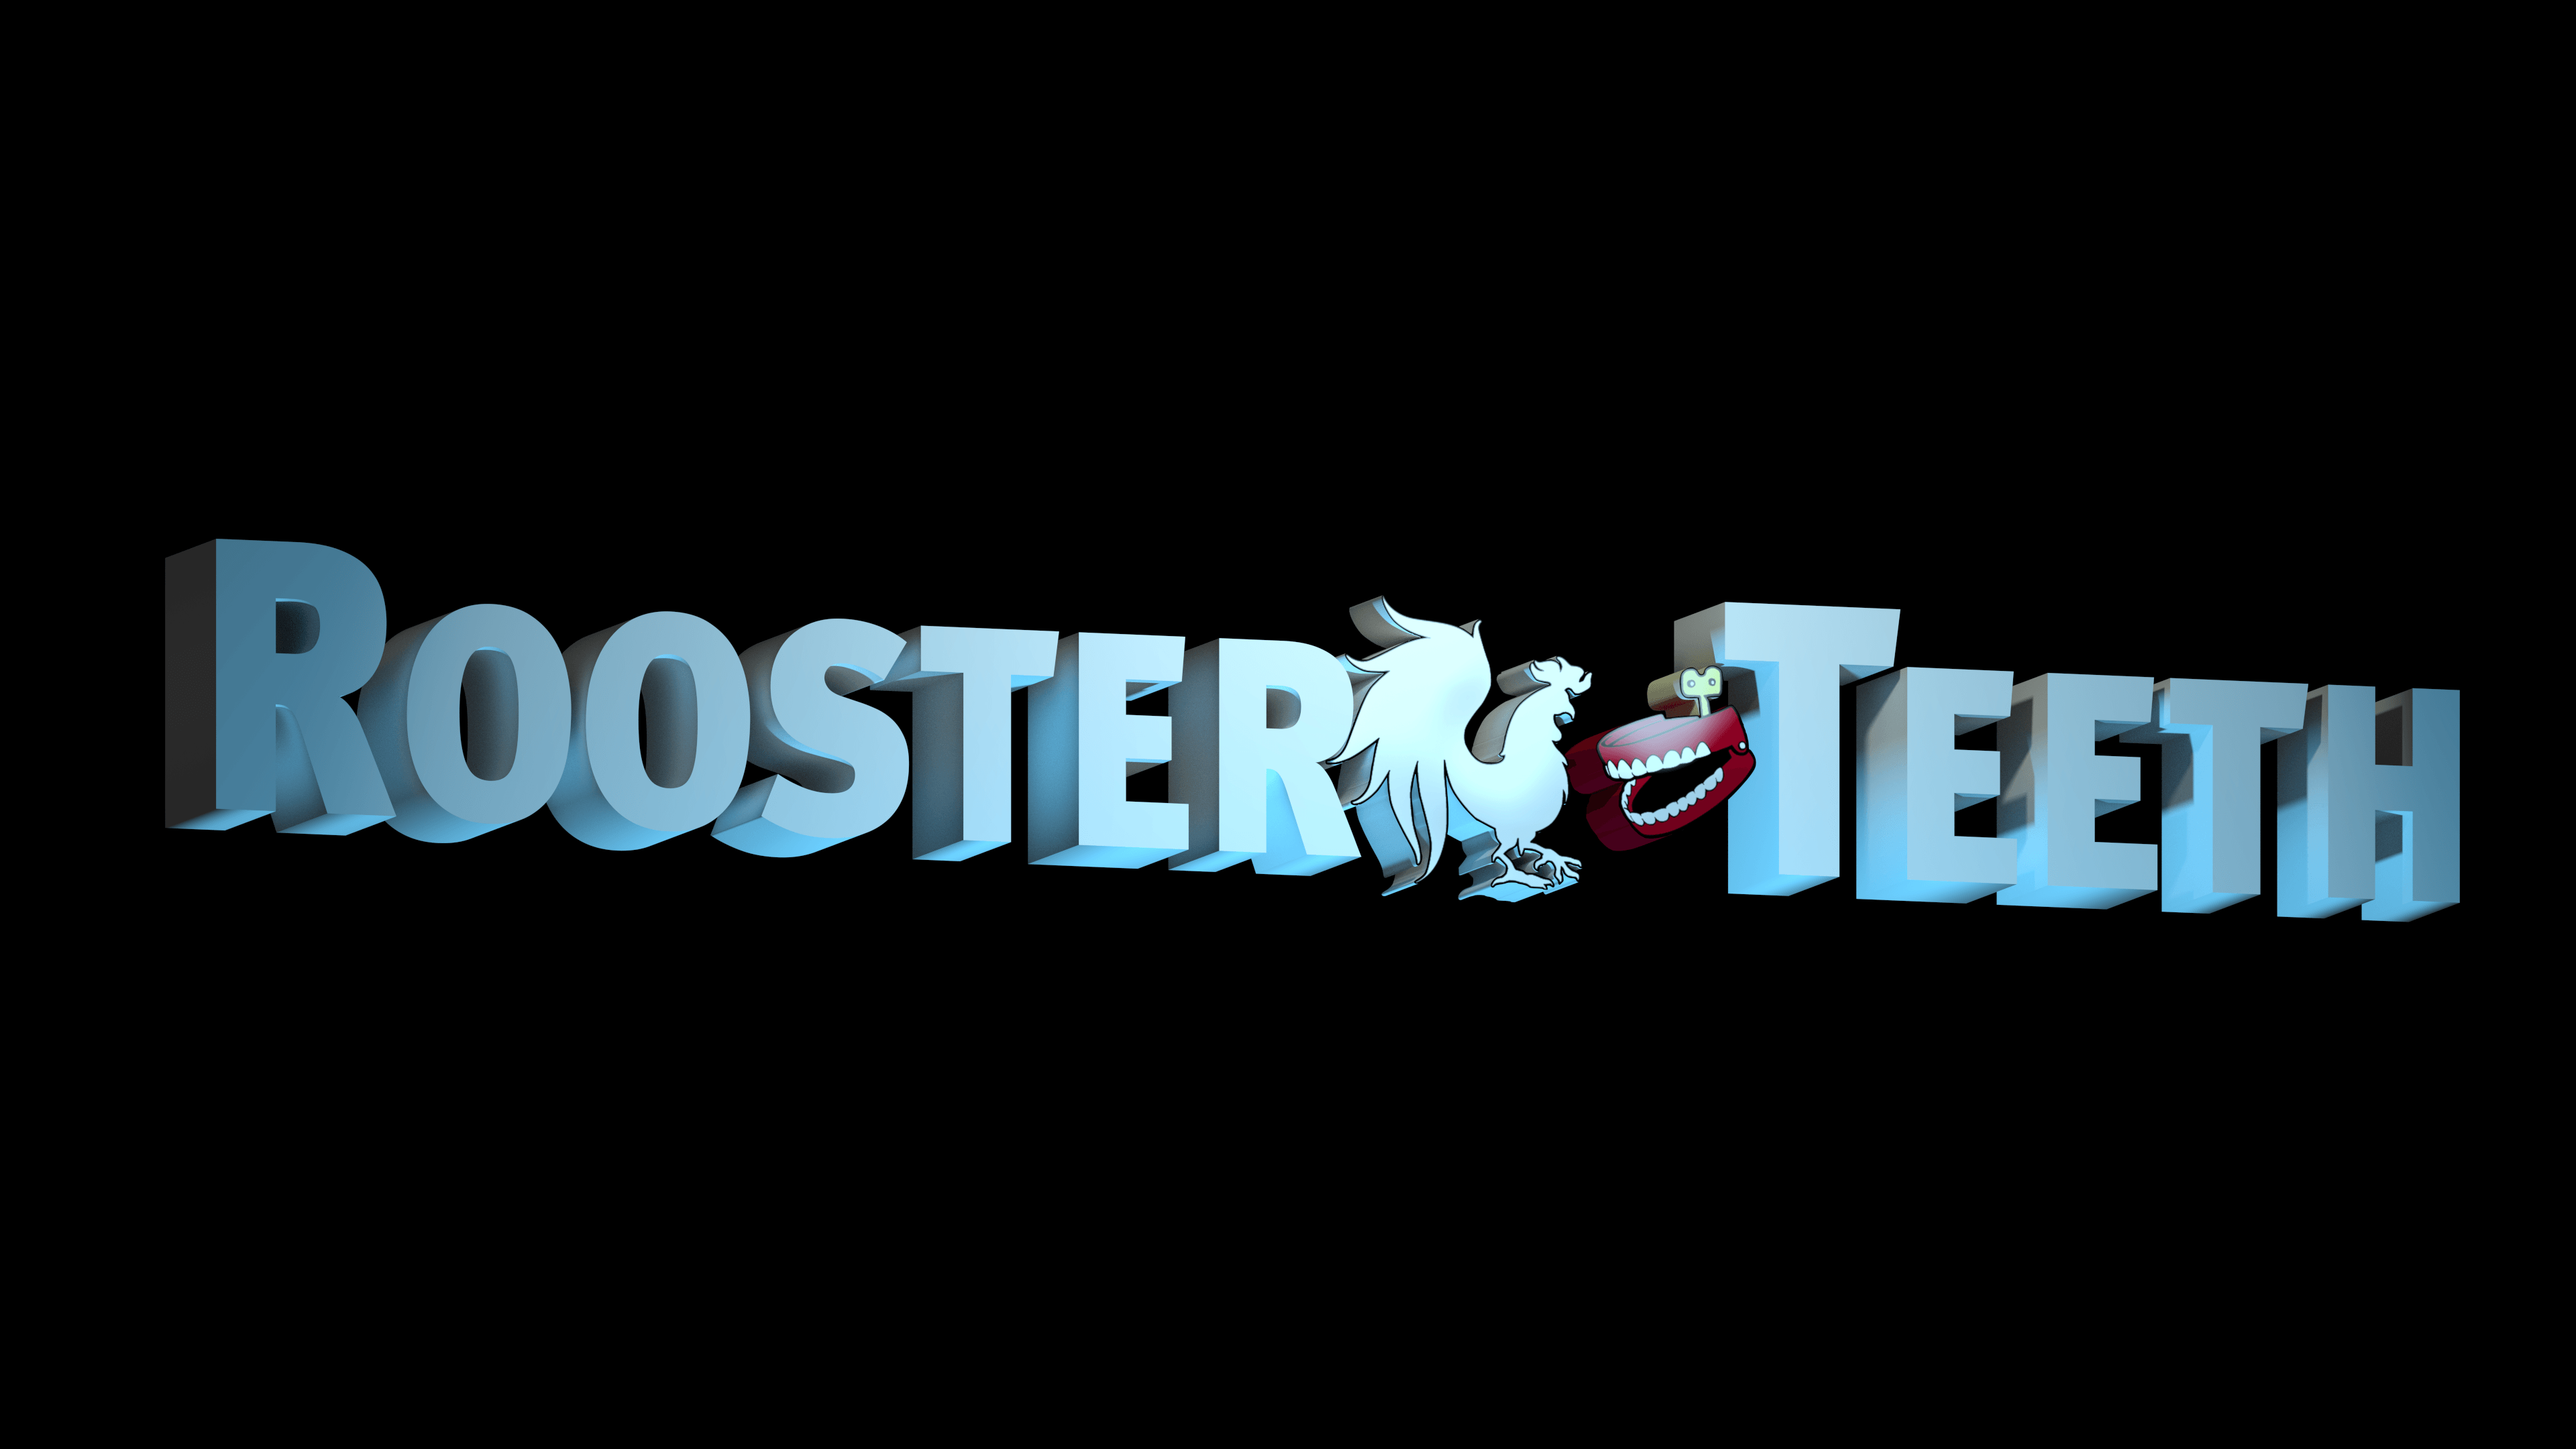 Rooster Teeth Logo - 4K Custom 3D Rooster Teeth Logo Wallpaper